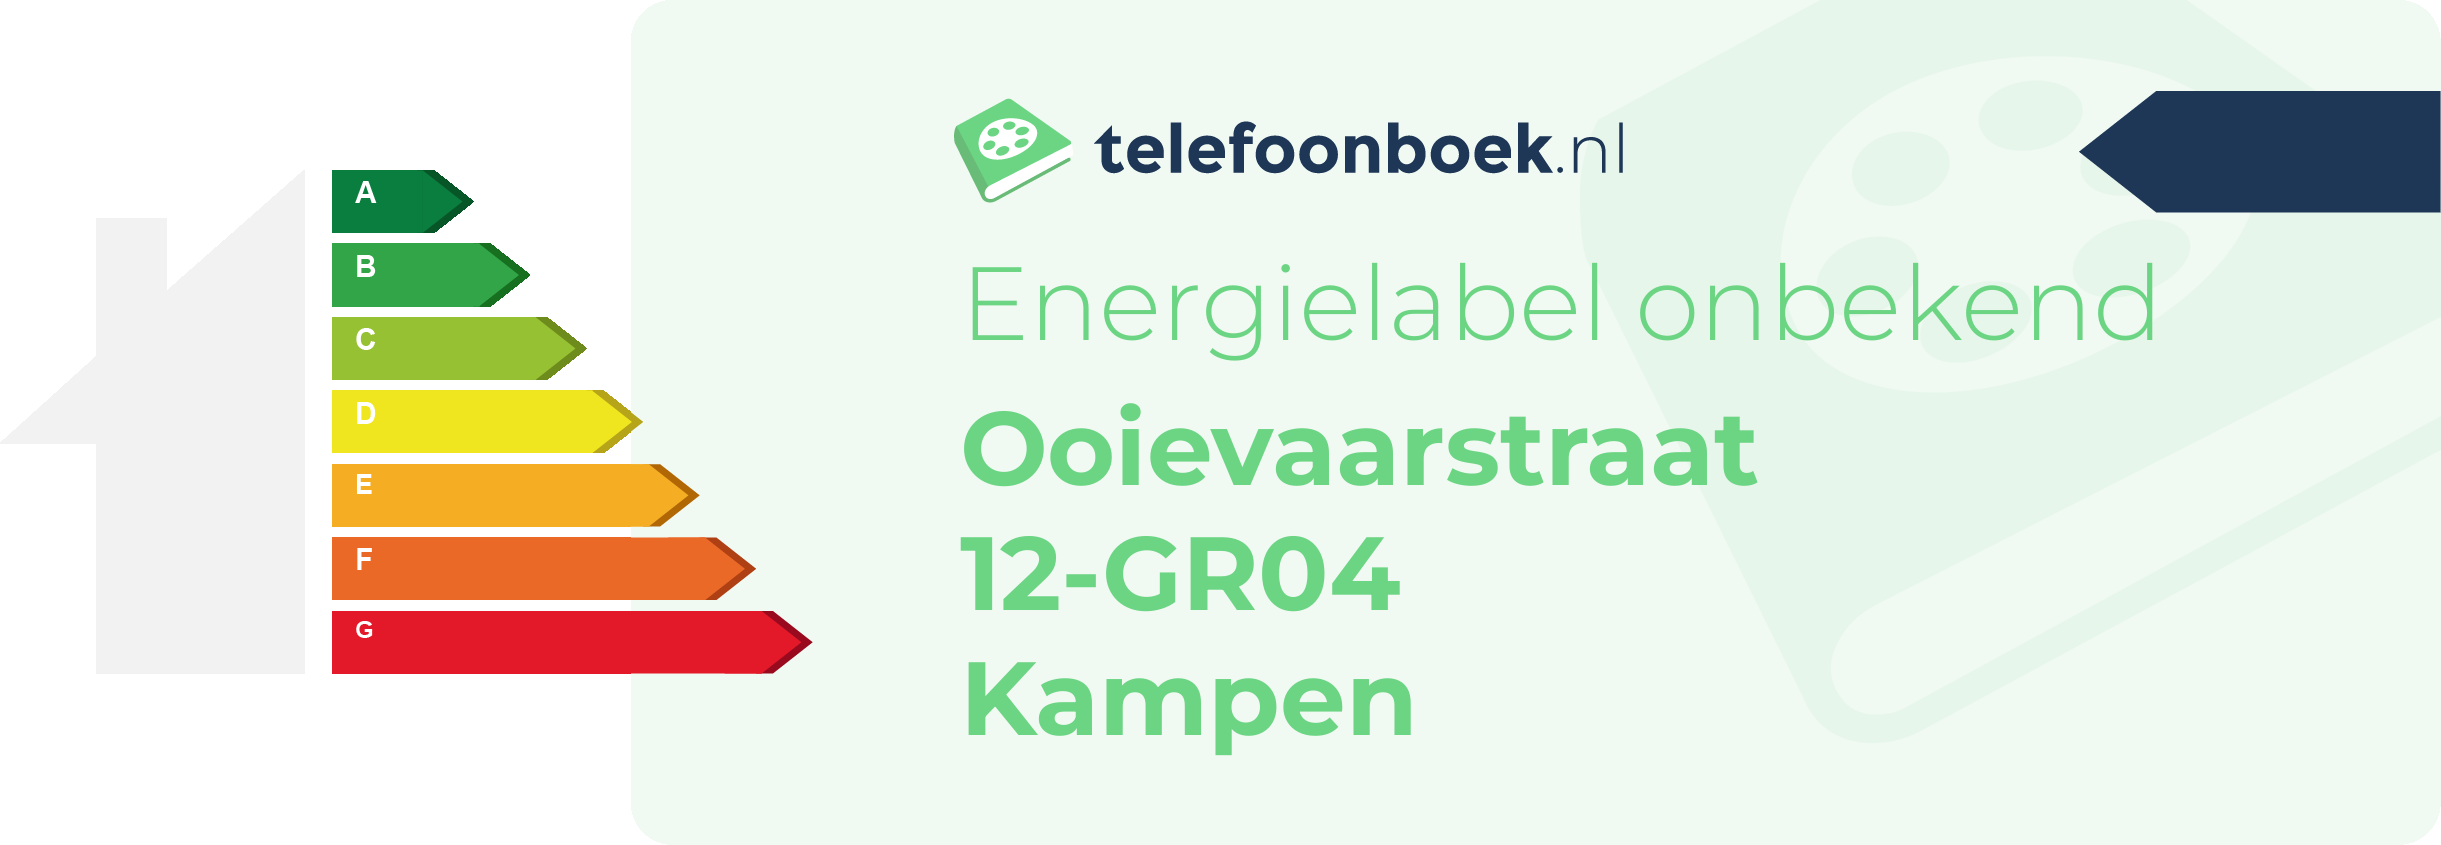 Energielabel Ooievaarstraat 12-GR04 Kampen